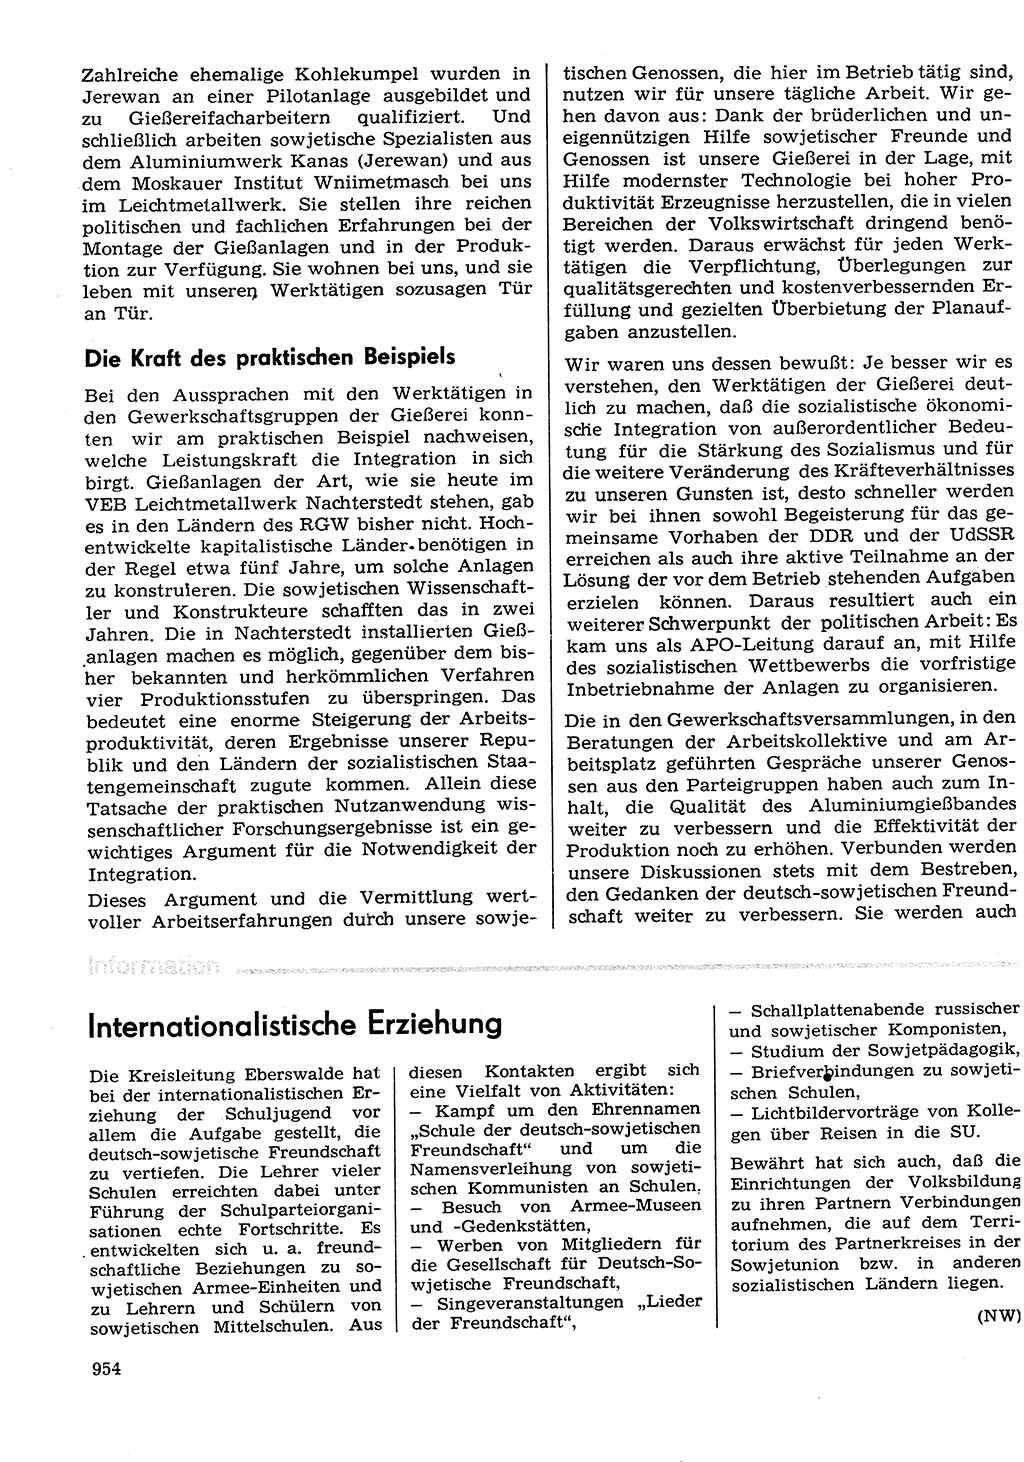 Neuer Weg (NW), Organ des Zentralkomitees (ZK) der SED (Sozialistische Einheitspartei Deutschlands) für Fragen des Parteilebens, 29. Jahrgang [Deutsche Demokratische Republik (DDR)] 1974, Seite 954 (NW ZK SED DDR 1974, S. 954)